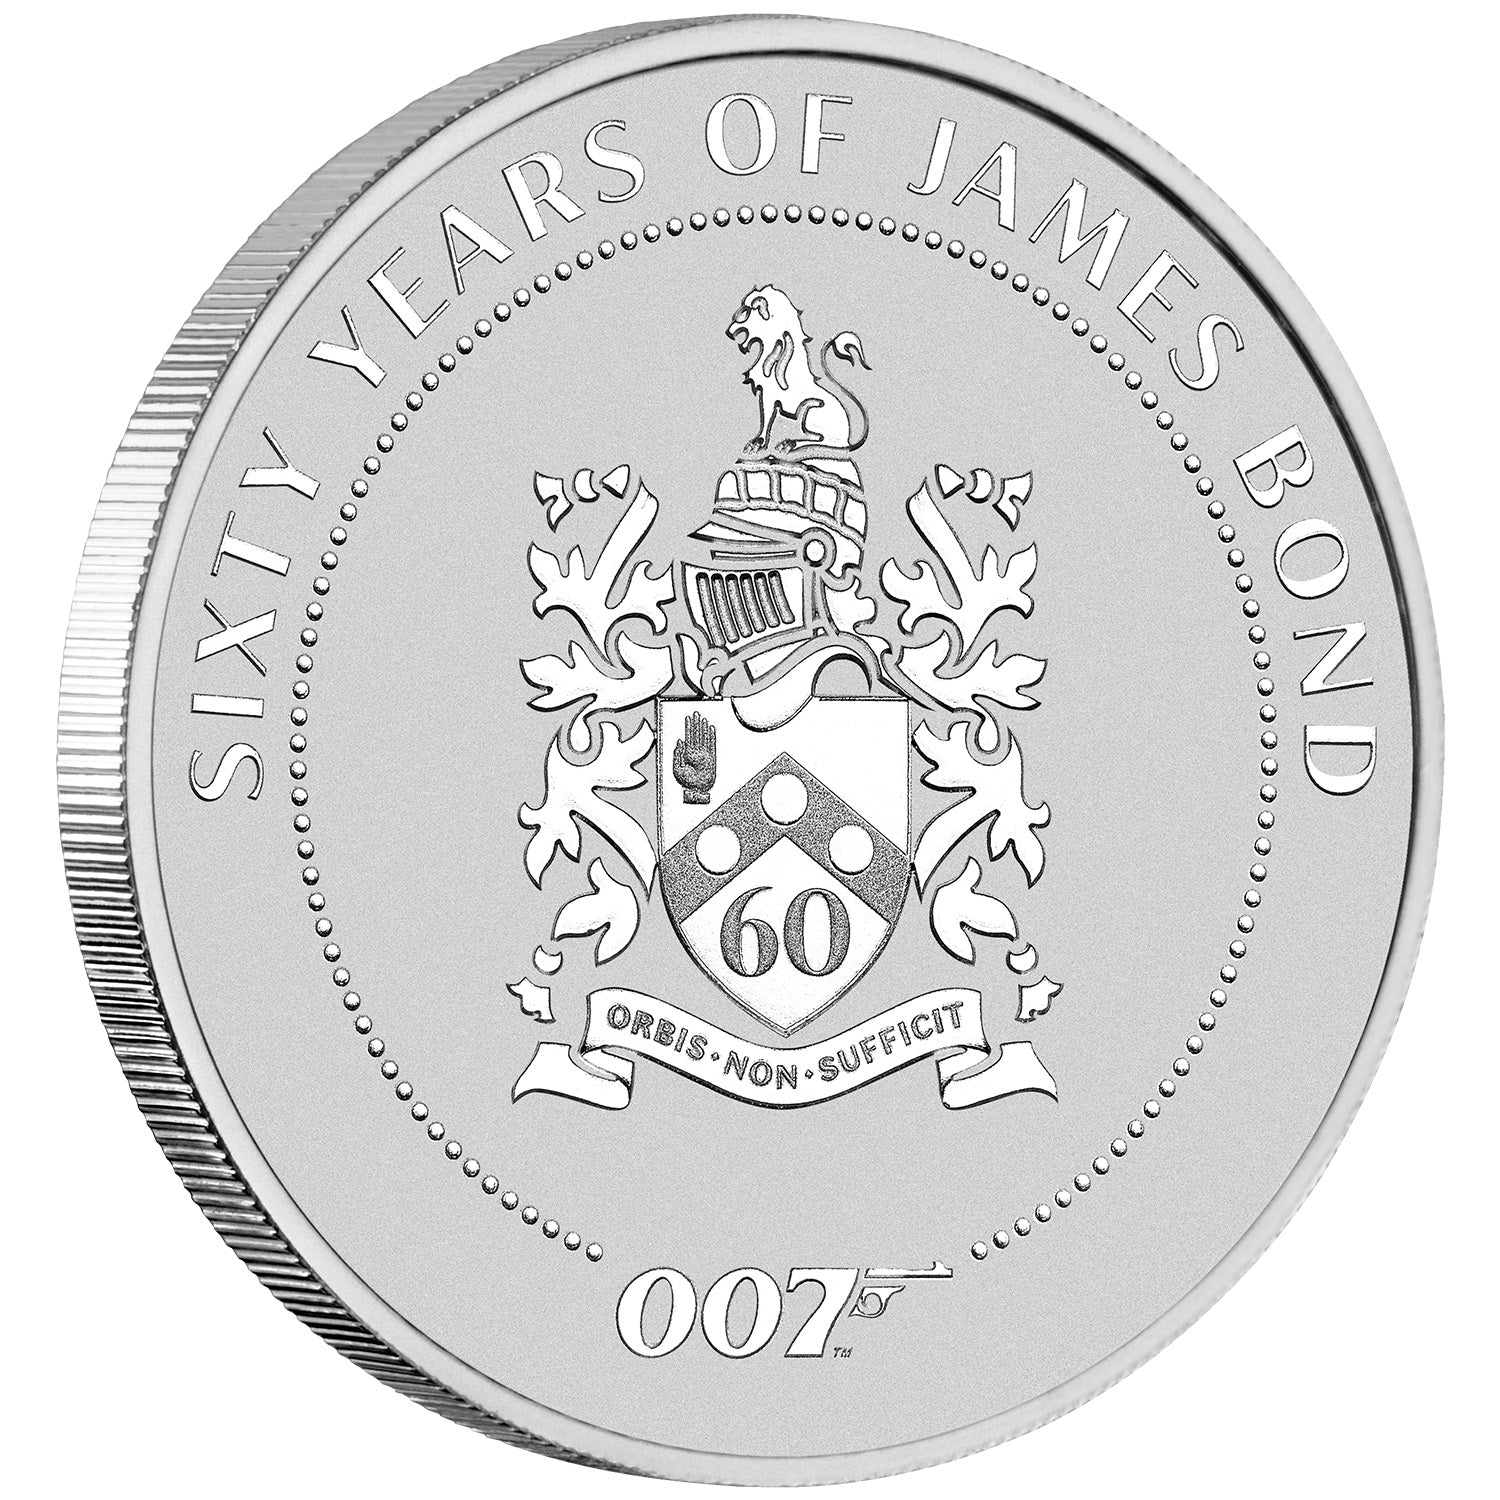 James Bond Coins 007Store